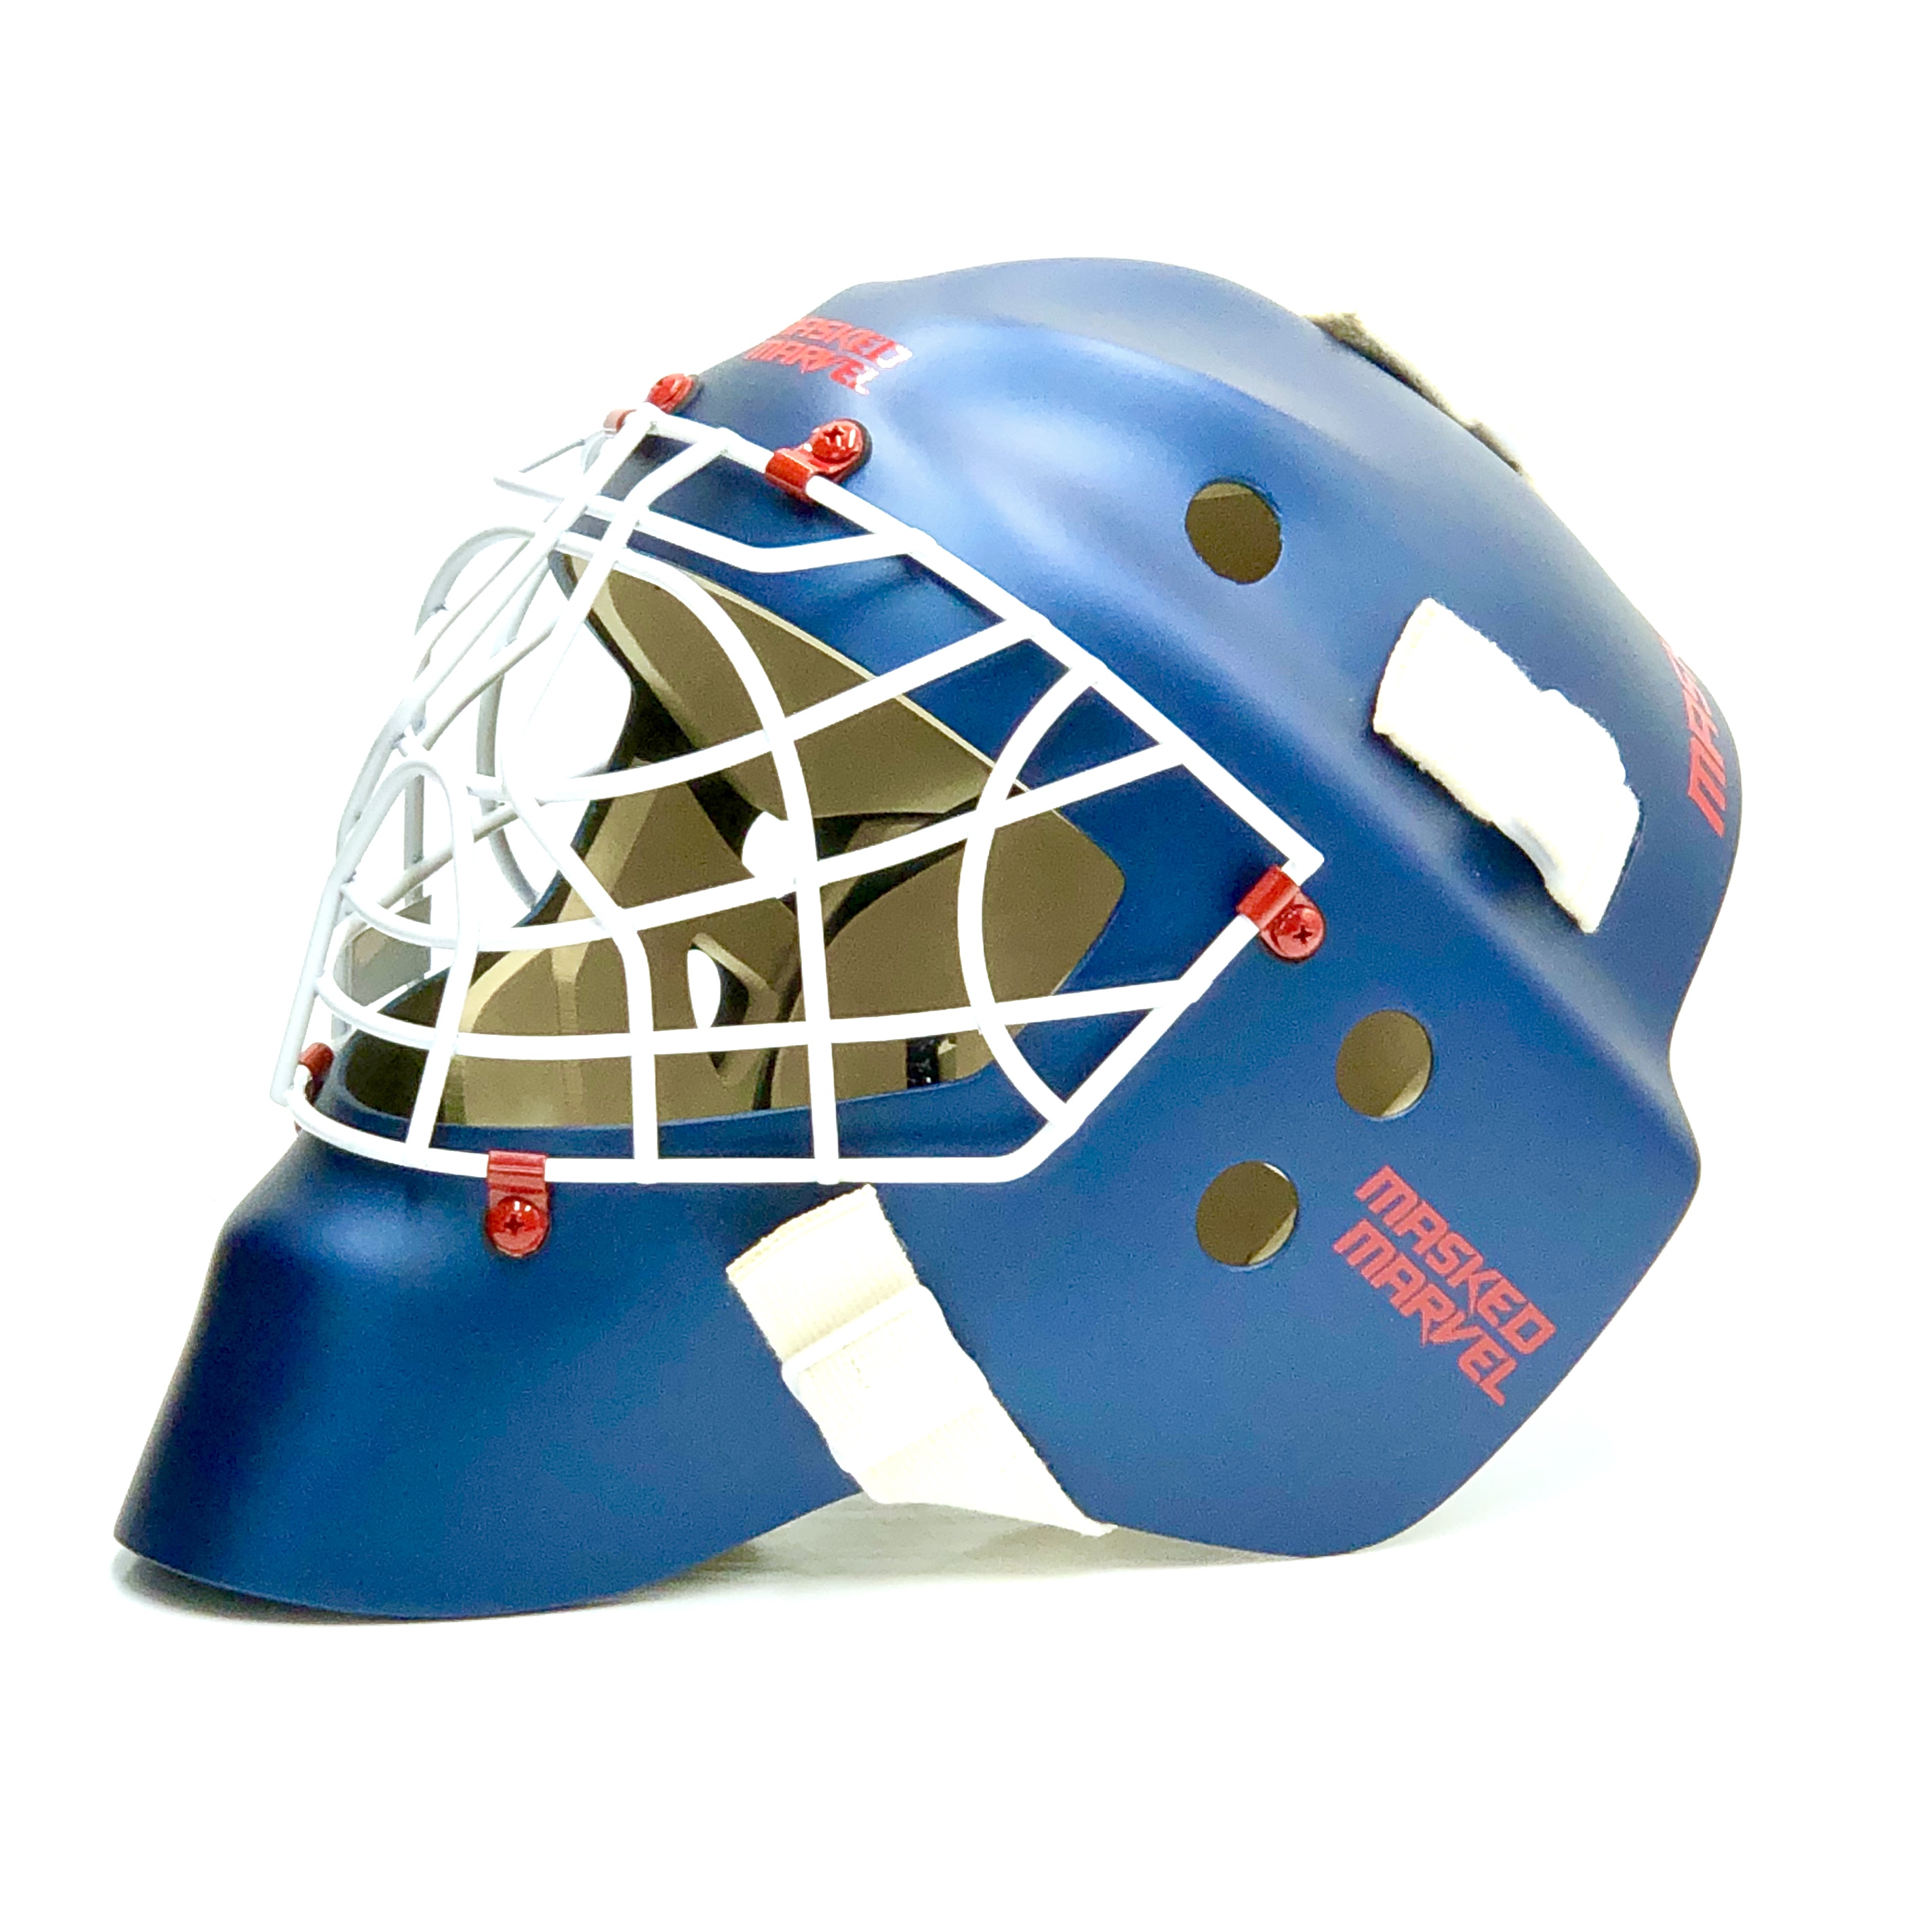 Bandit Junior » Masked Marvel Goalie Helmets » Its Your Head - You Decide!